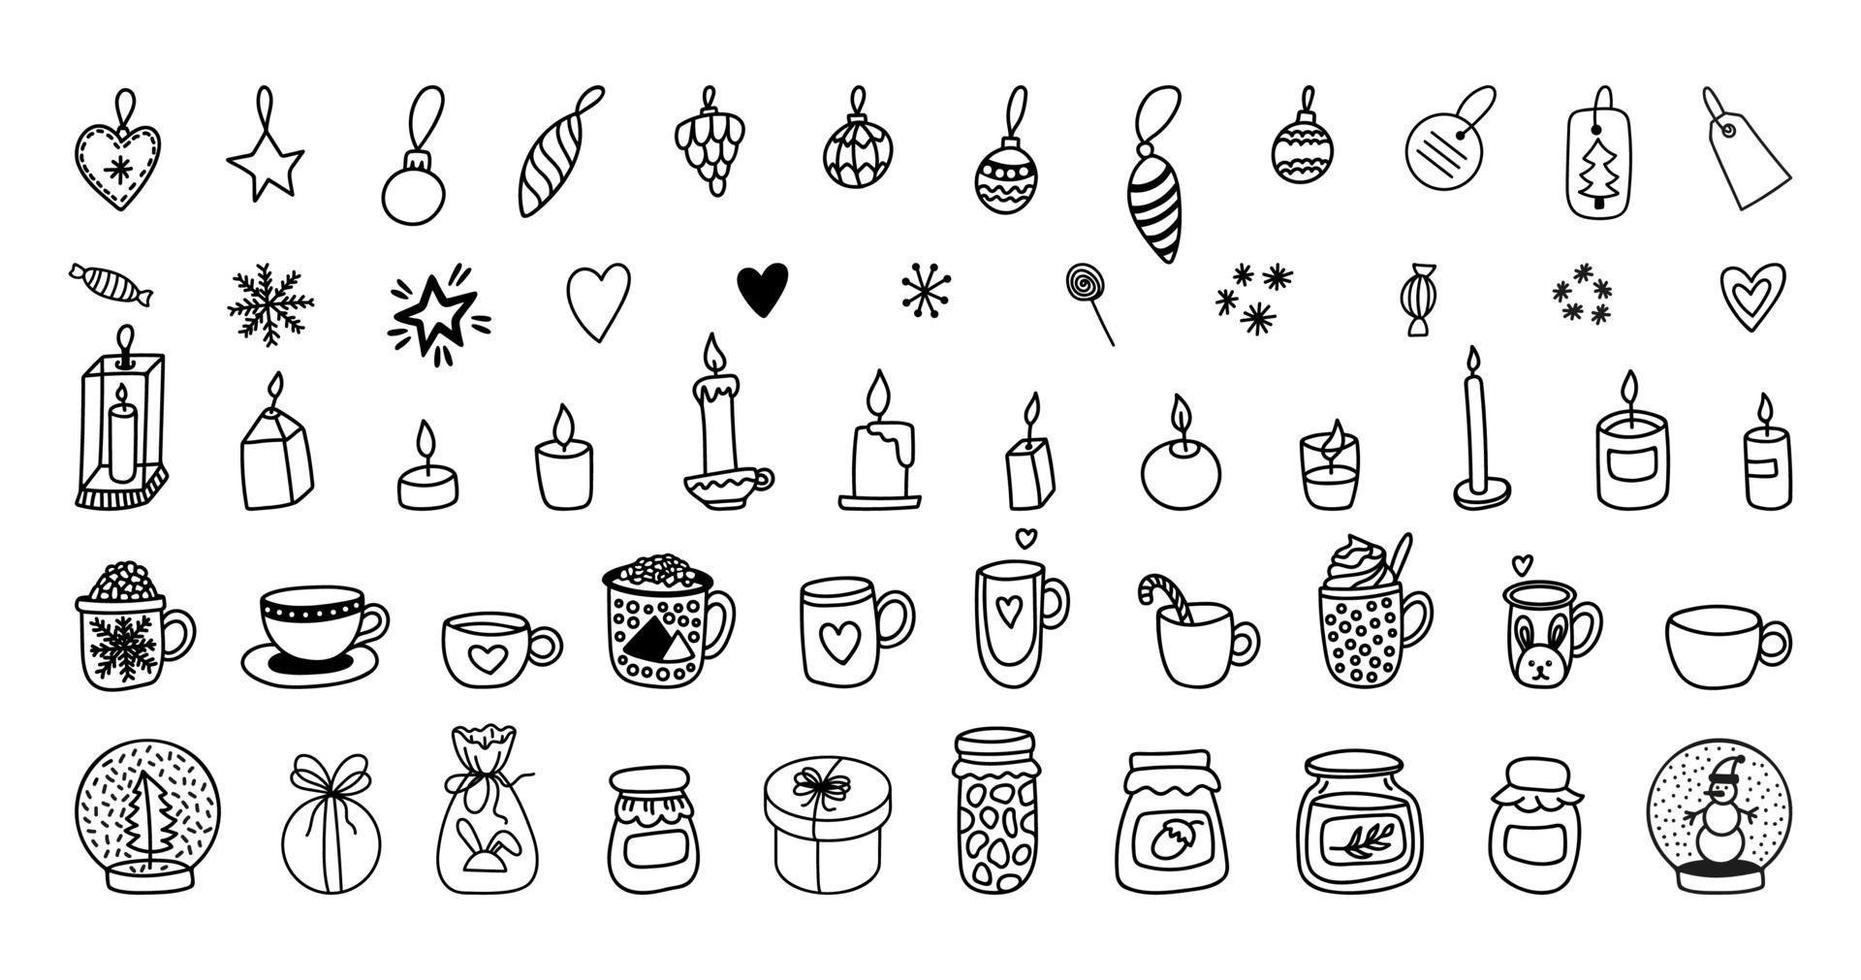 Kerstmis clip art reeks met kopjes, kaarsen, boom speelgoed, potten, sneeuwbal. hand- getrokken tekening vector